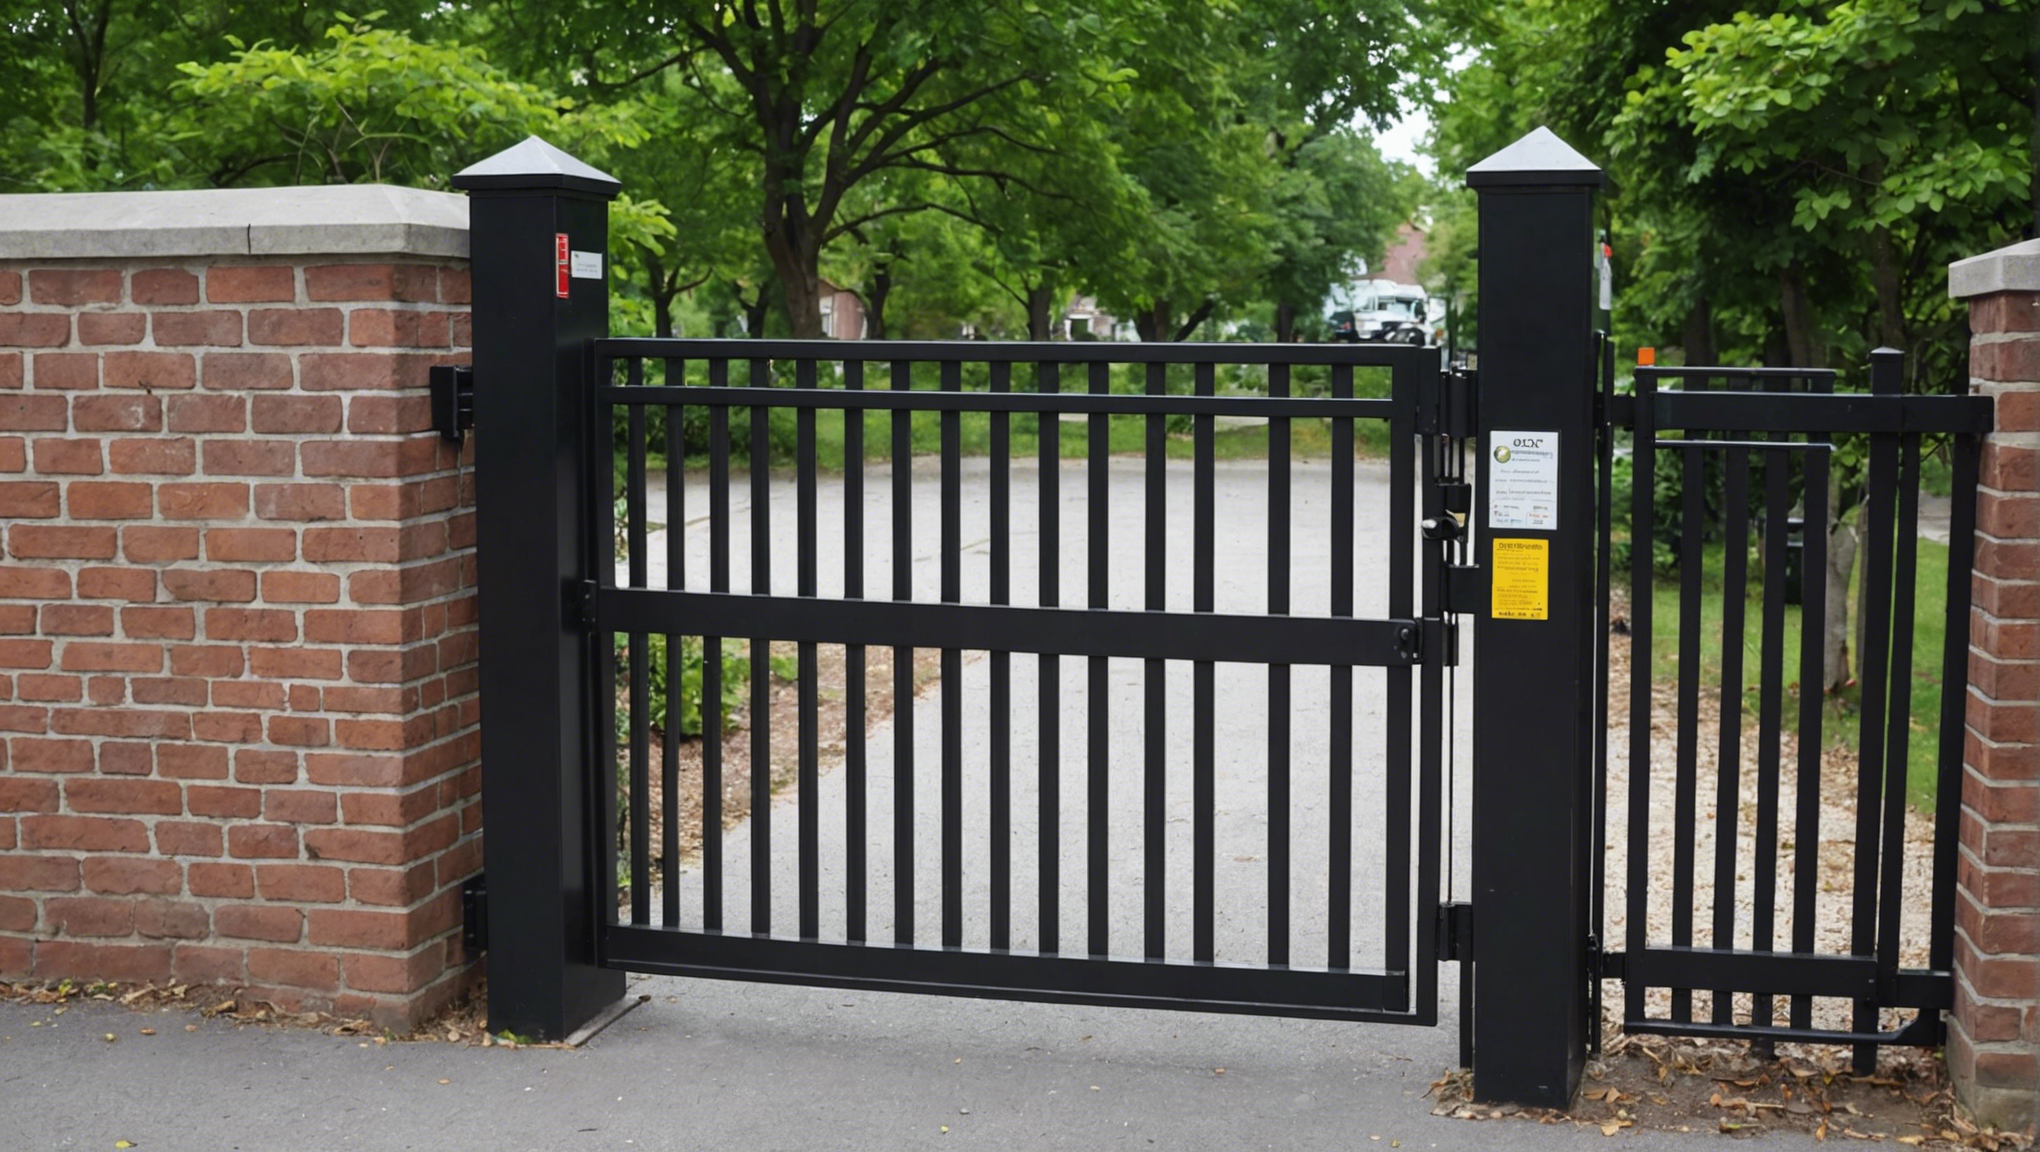 découvrez le fonctionnement de la fermeture automatique de portail et ses avantages pour la sécurité de votre propriété.